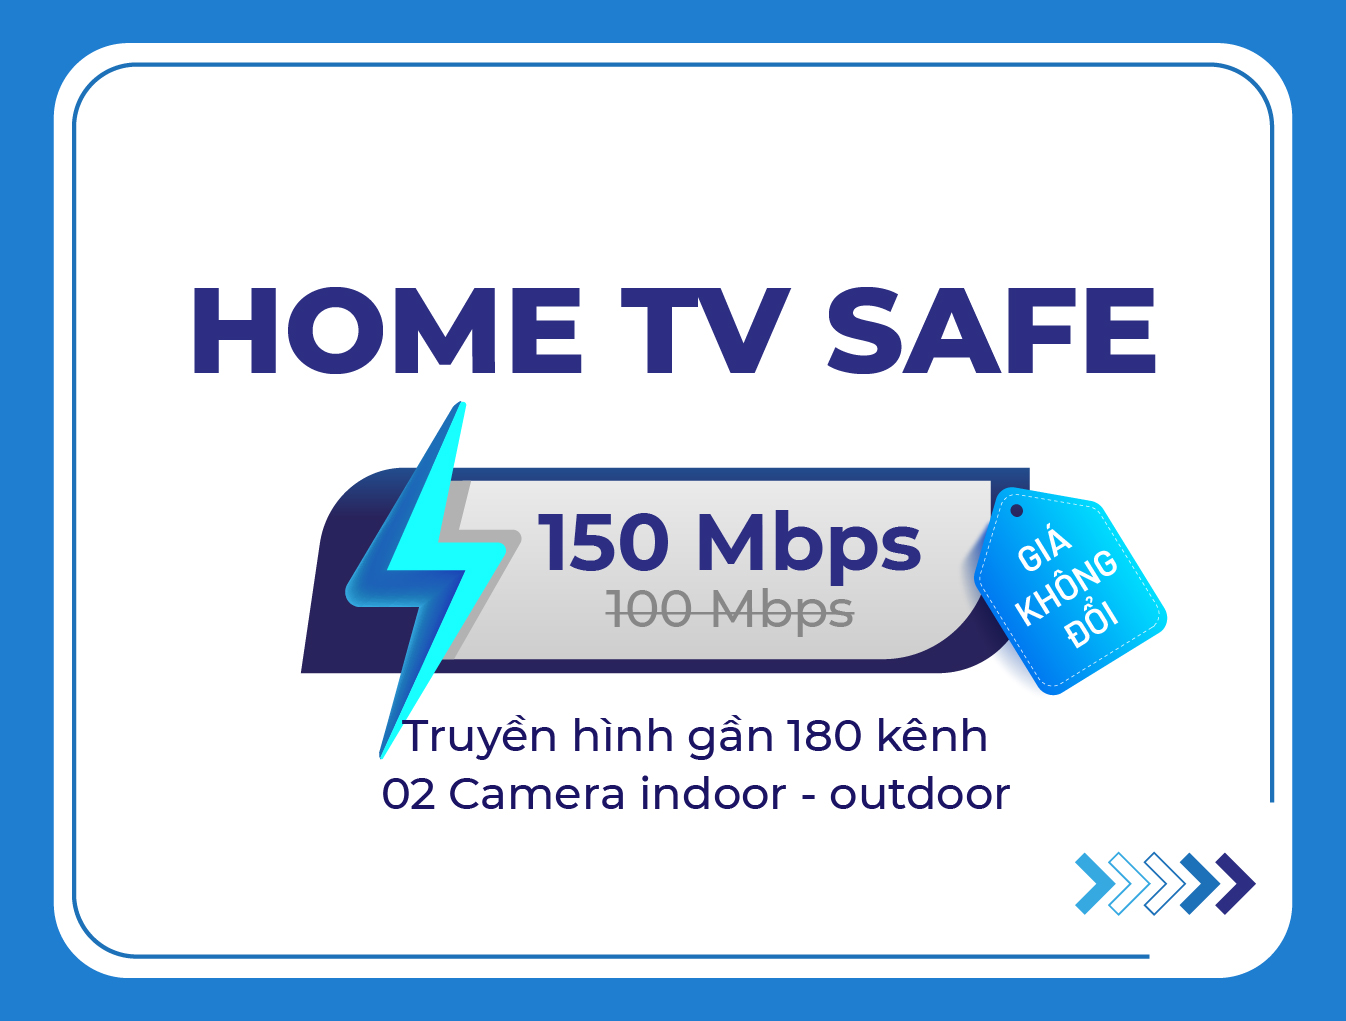 Home TV Safe